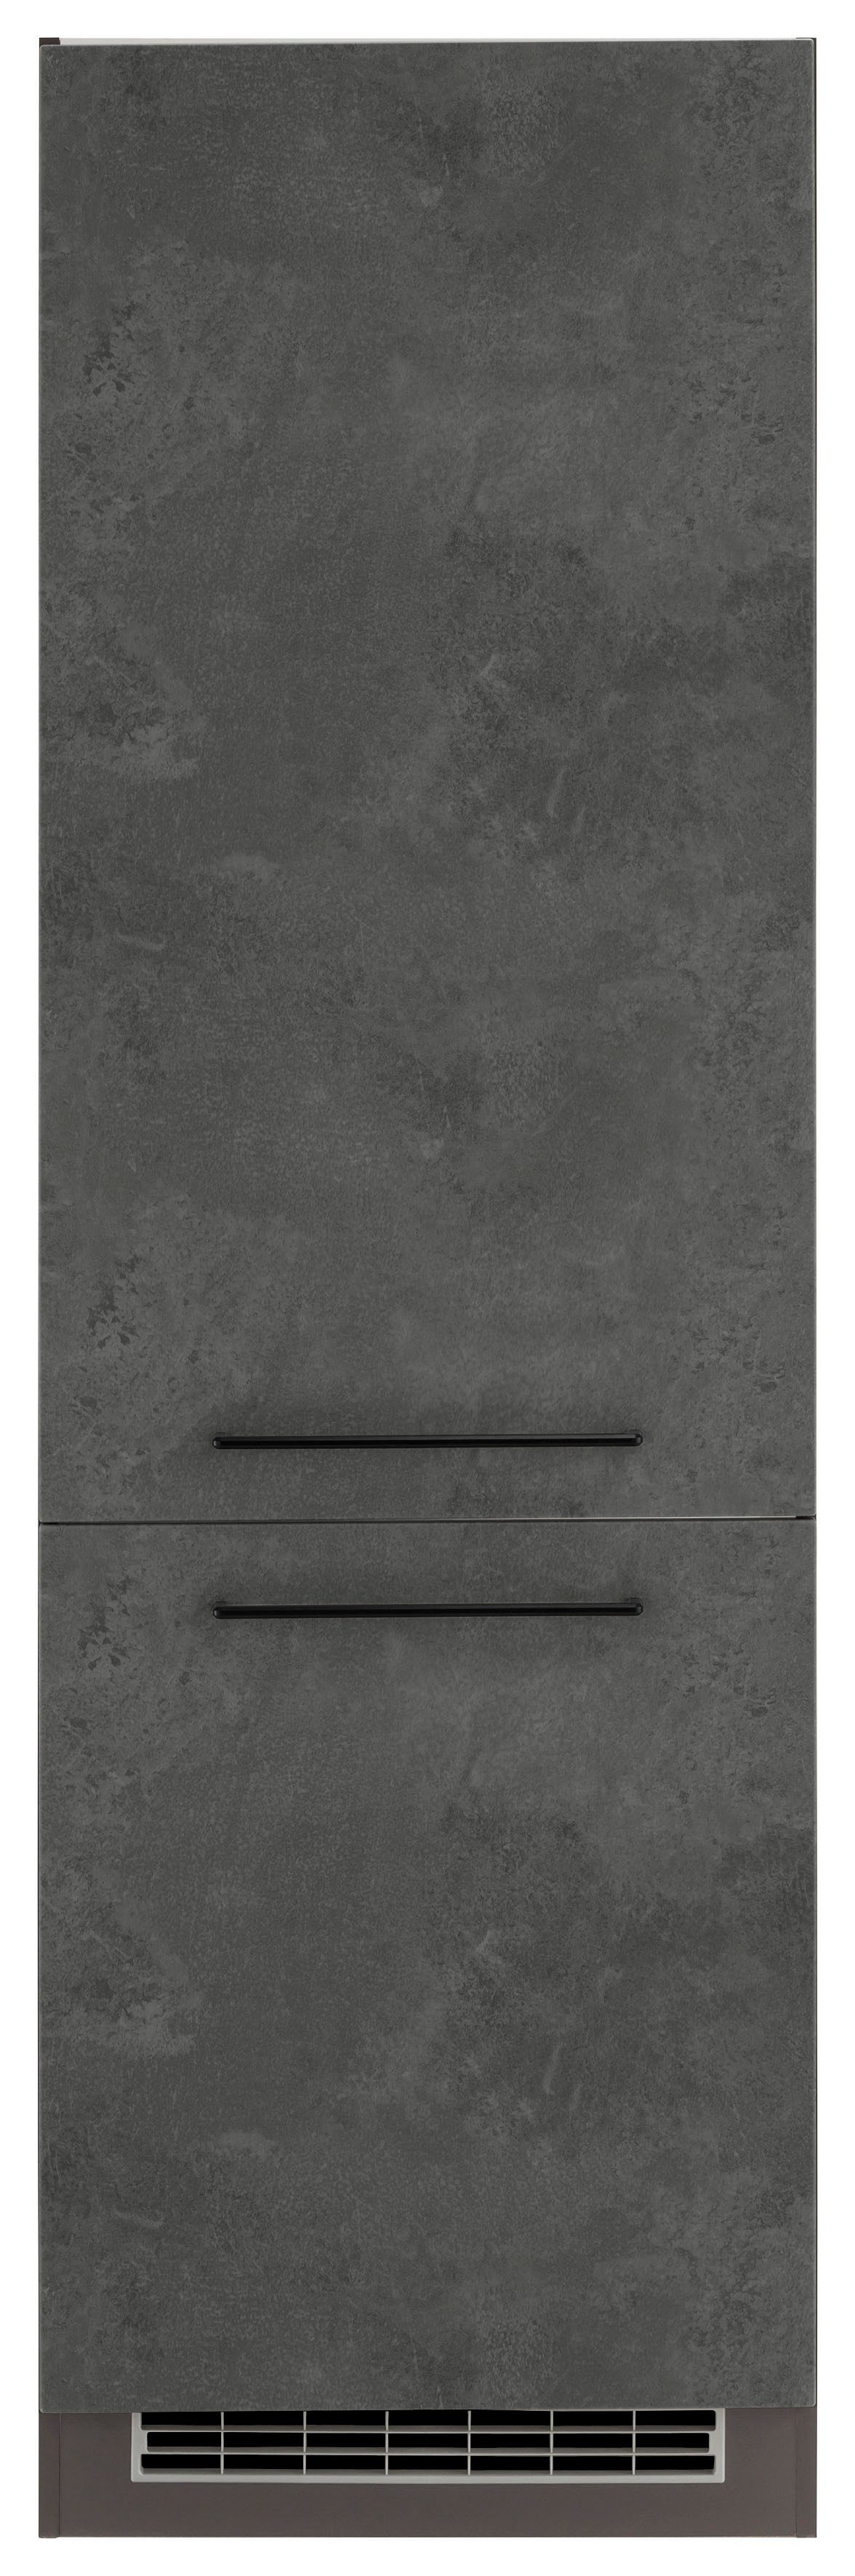 MÖBEL 2 HELD Türen, Front 60 hoch, schwarzer cm MDF Tulsa Metallgriff, Kühlumbauschrank cm breit, 200